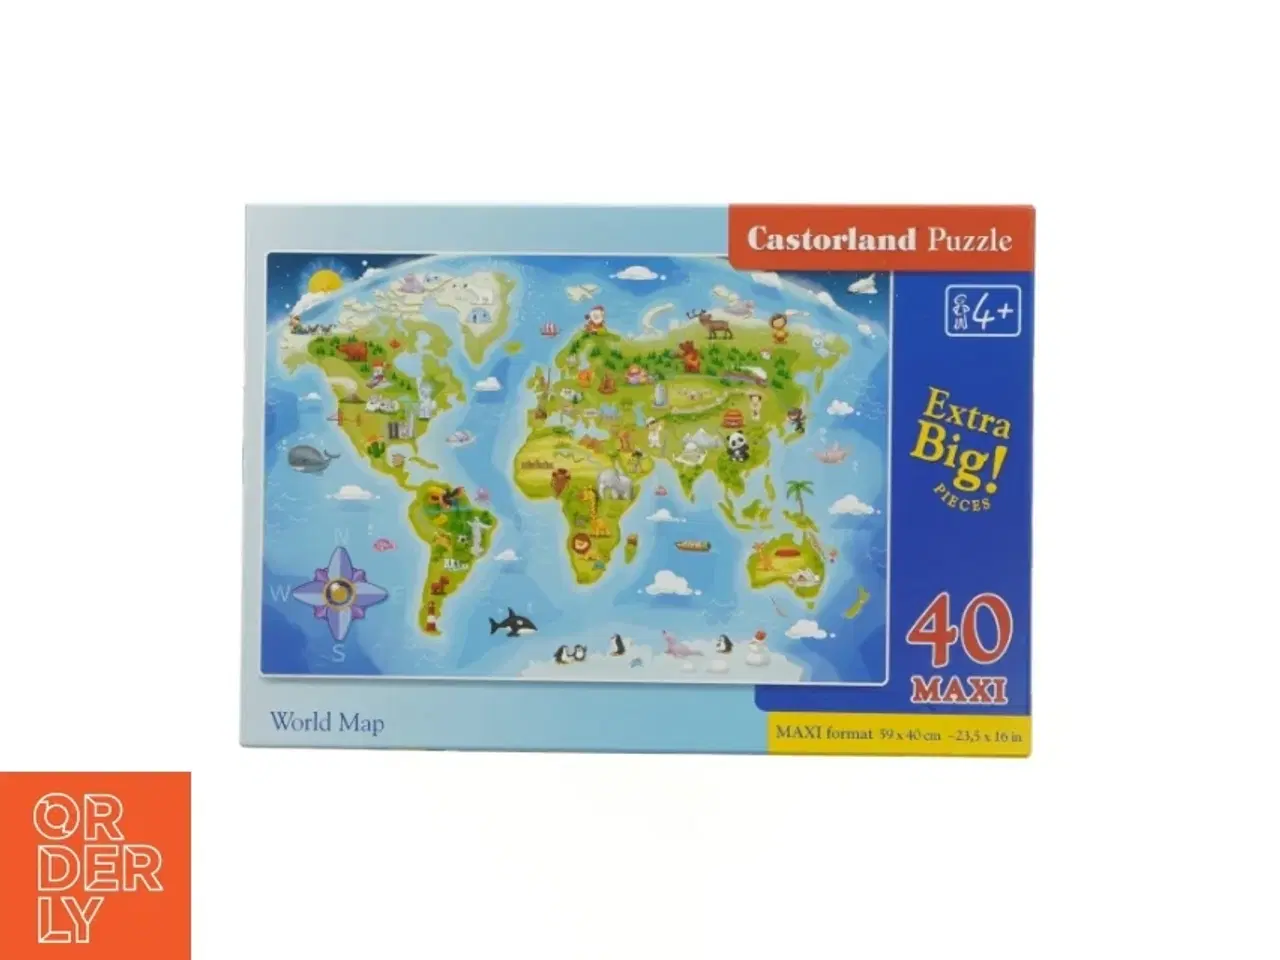 Billede 1 - Børnepuslespil med verdenskort fra Castorland (str. 59 x 40 cm)